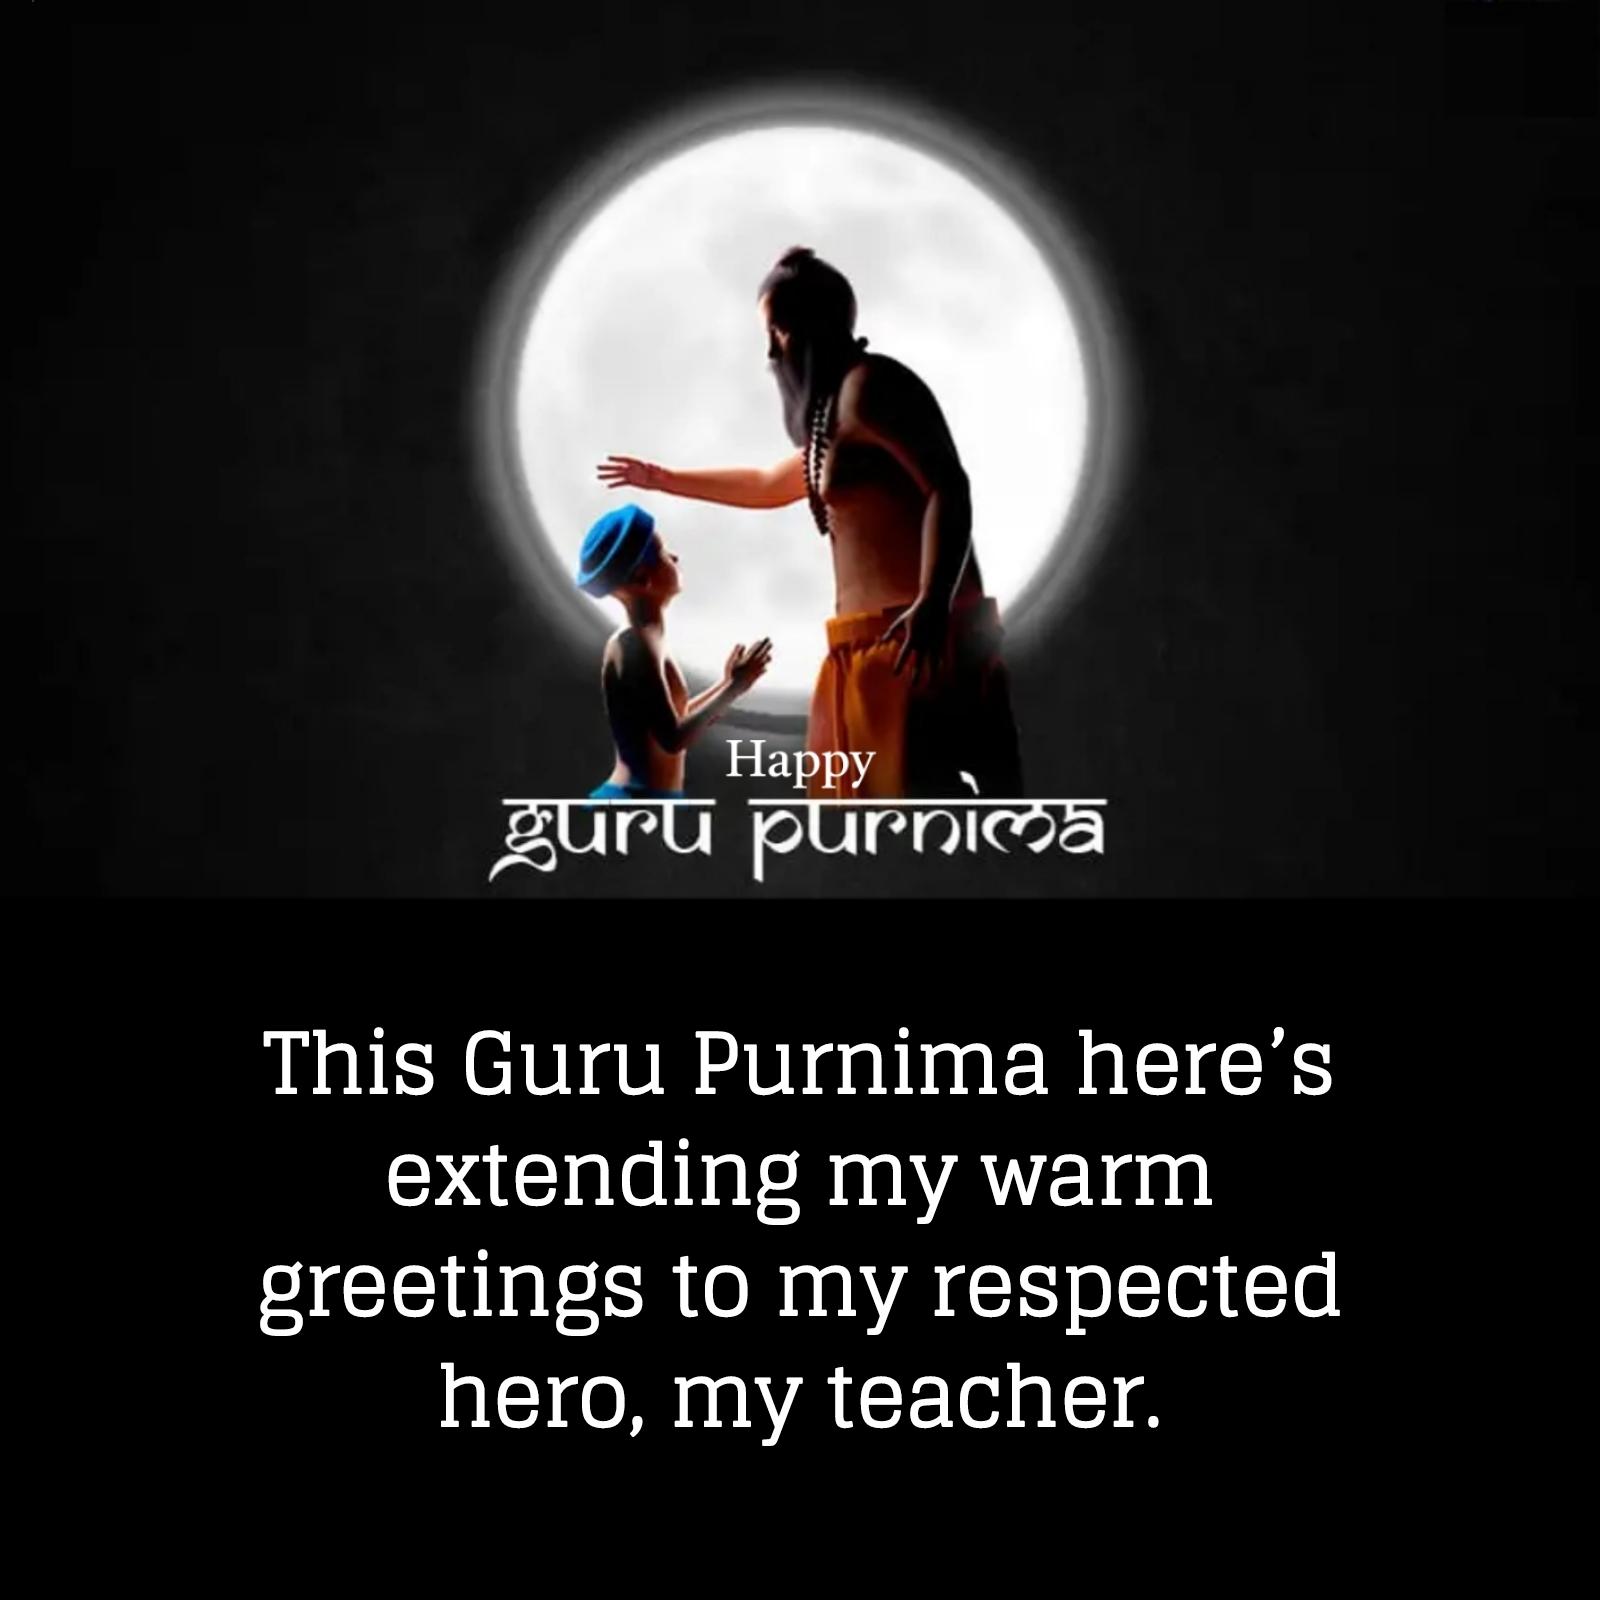 This Guru Purnima heres extending my warm greetings to my respected hero